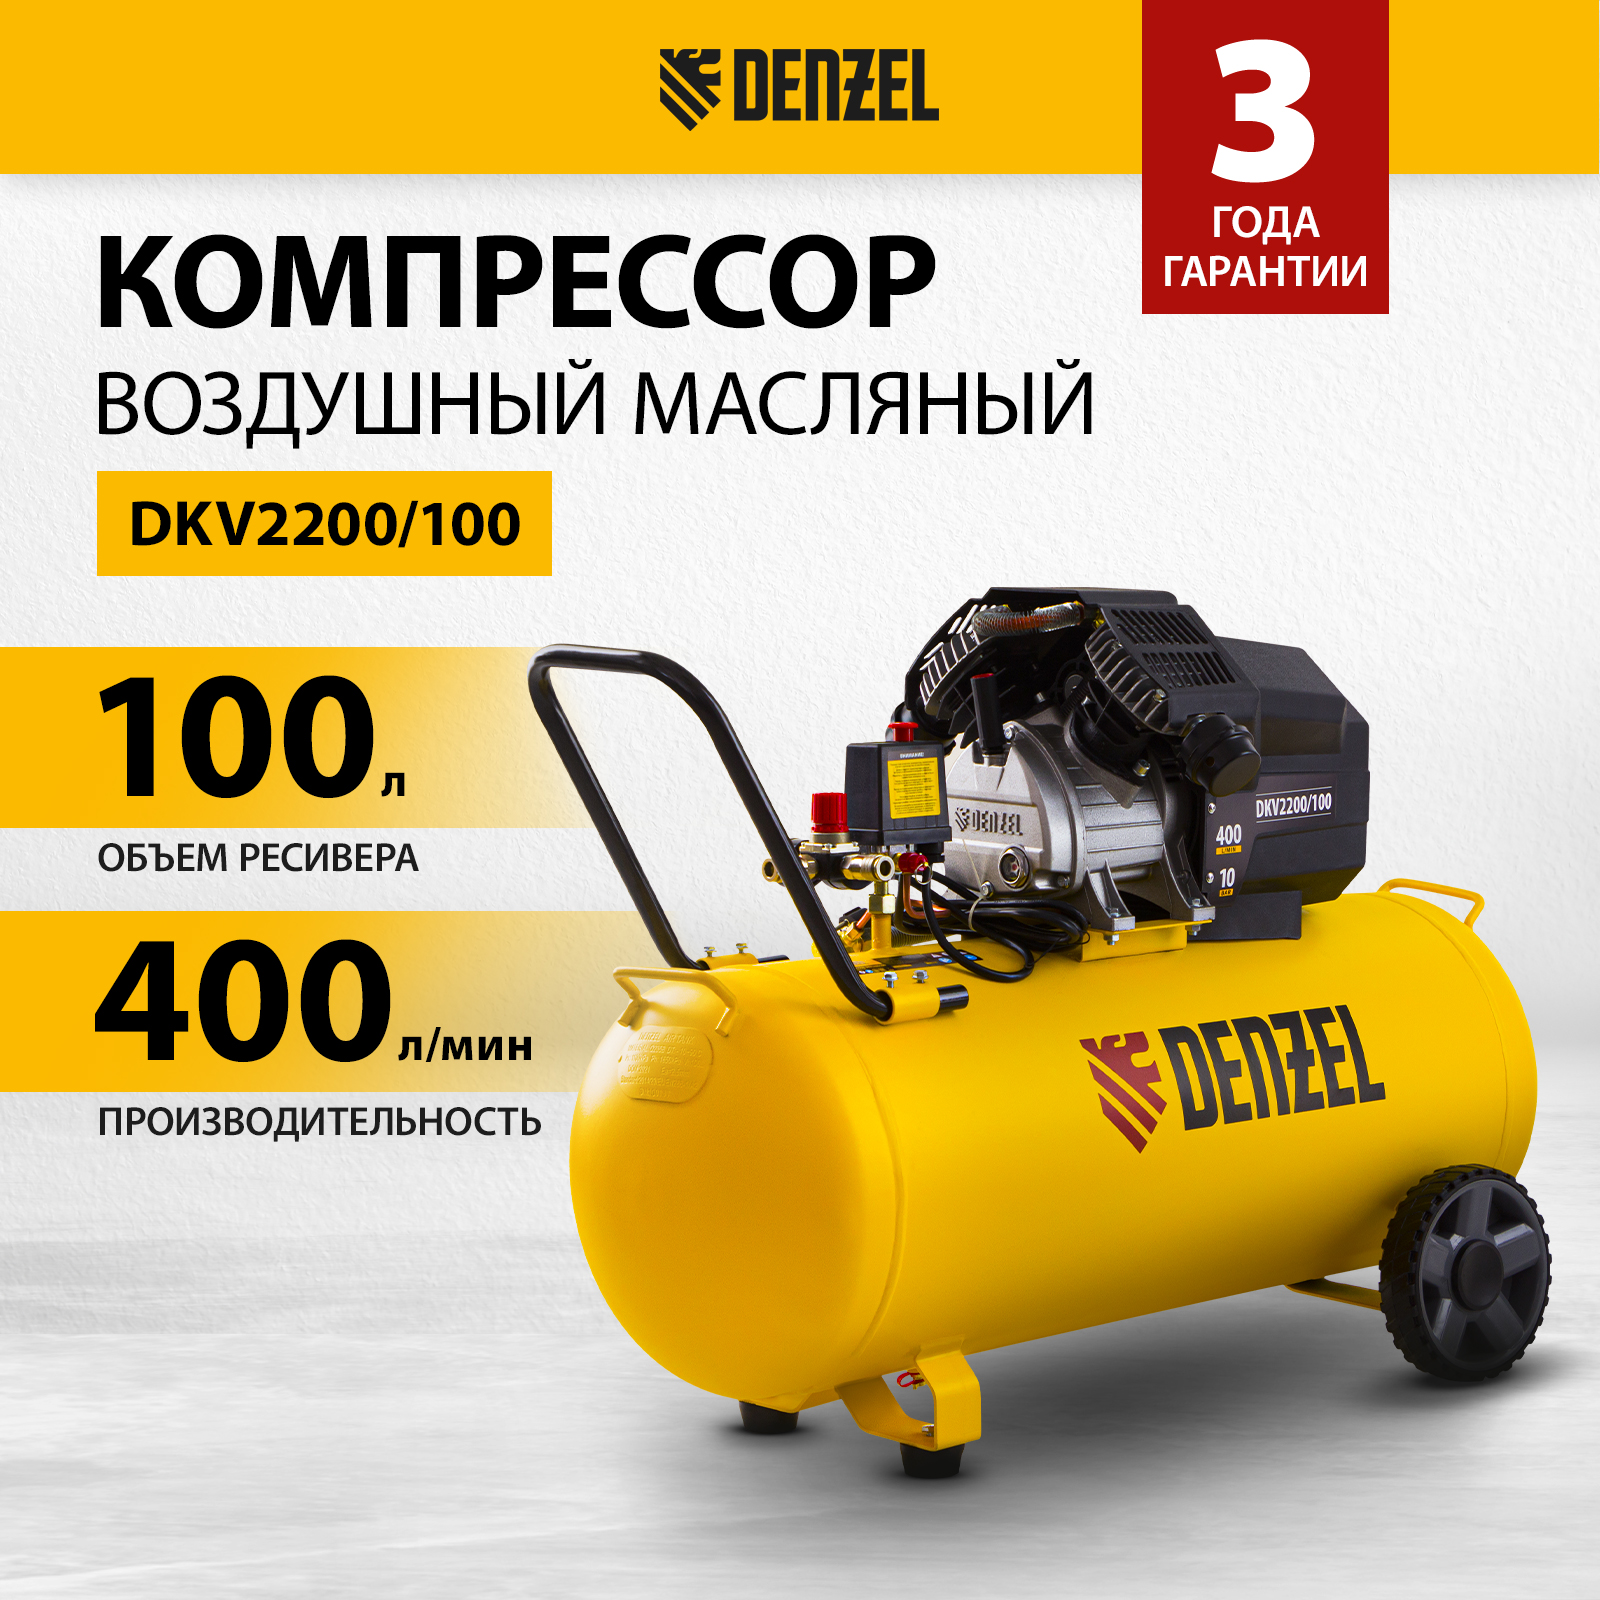 компрессор воздушный denzel dkv2200 100 х pro 58079 Компрессор воздушный DENZEL DKV2200/100 Х-PRO 58079